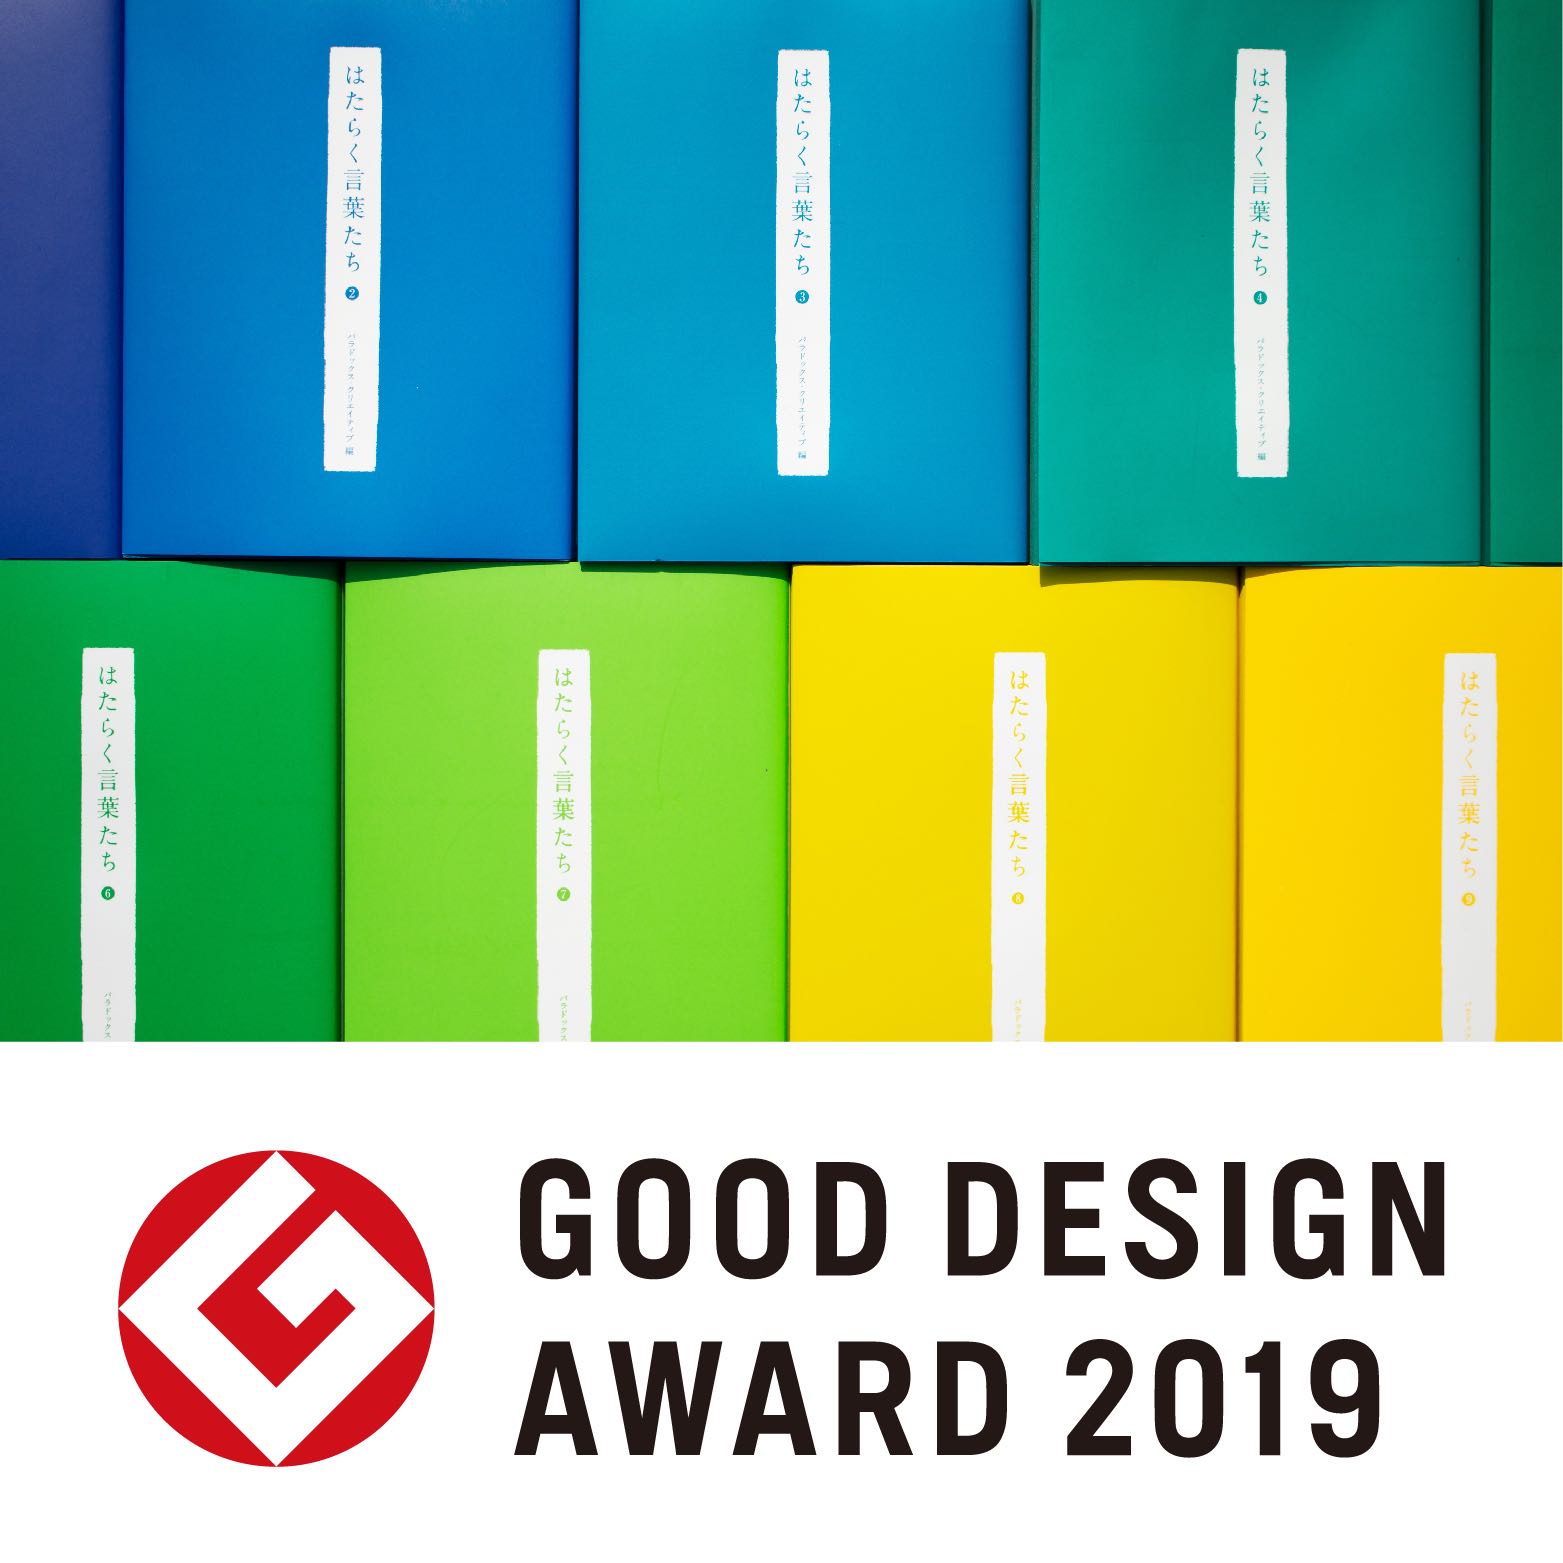 「はたらく言葉たち」がグッドデザイン賞2019を受賞しました。